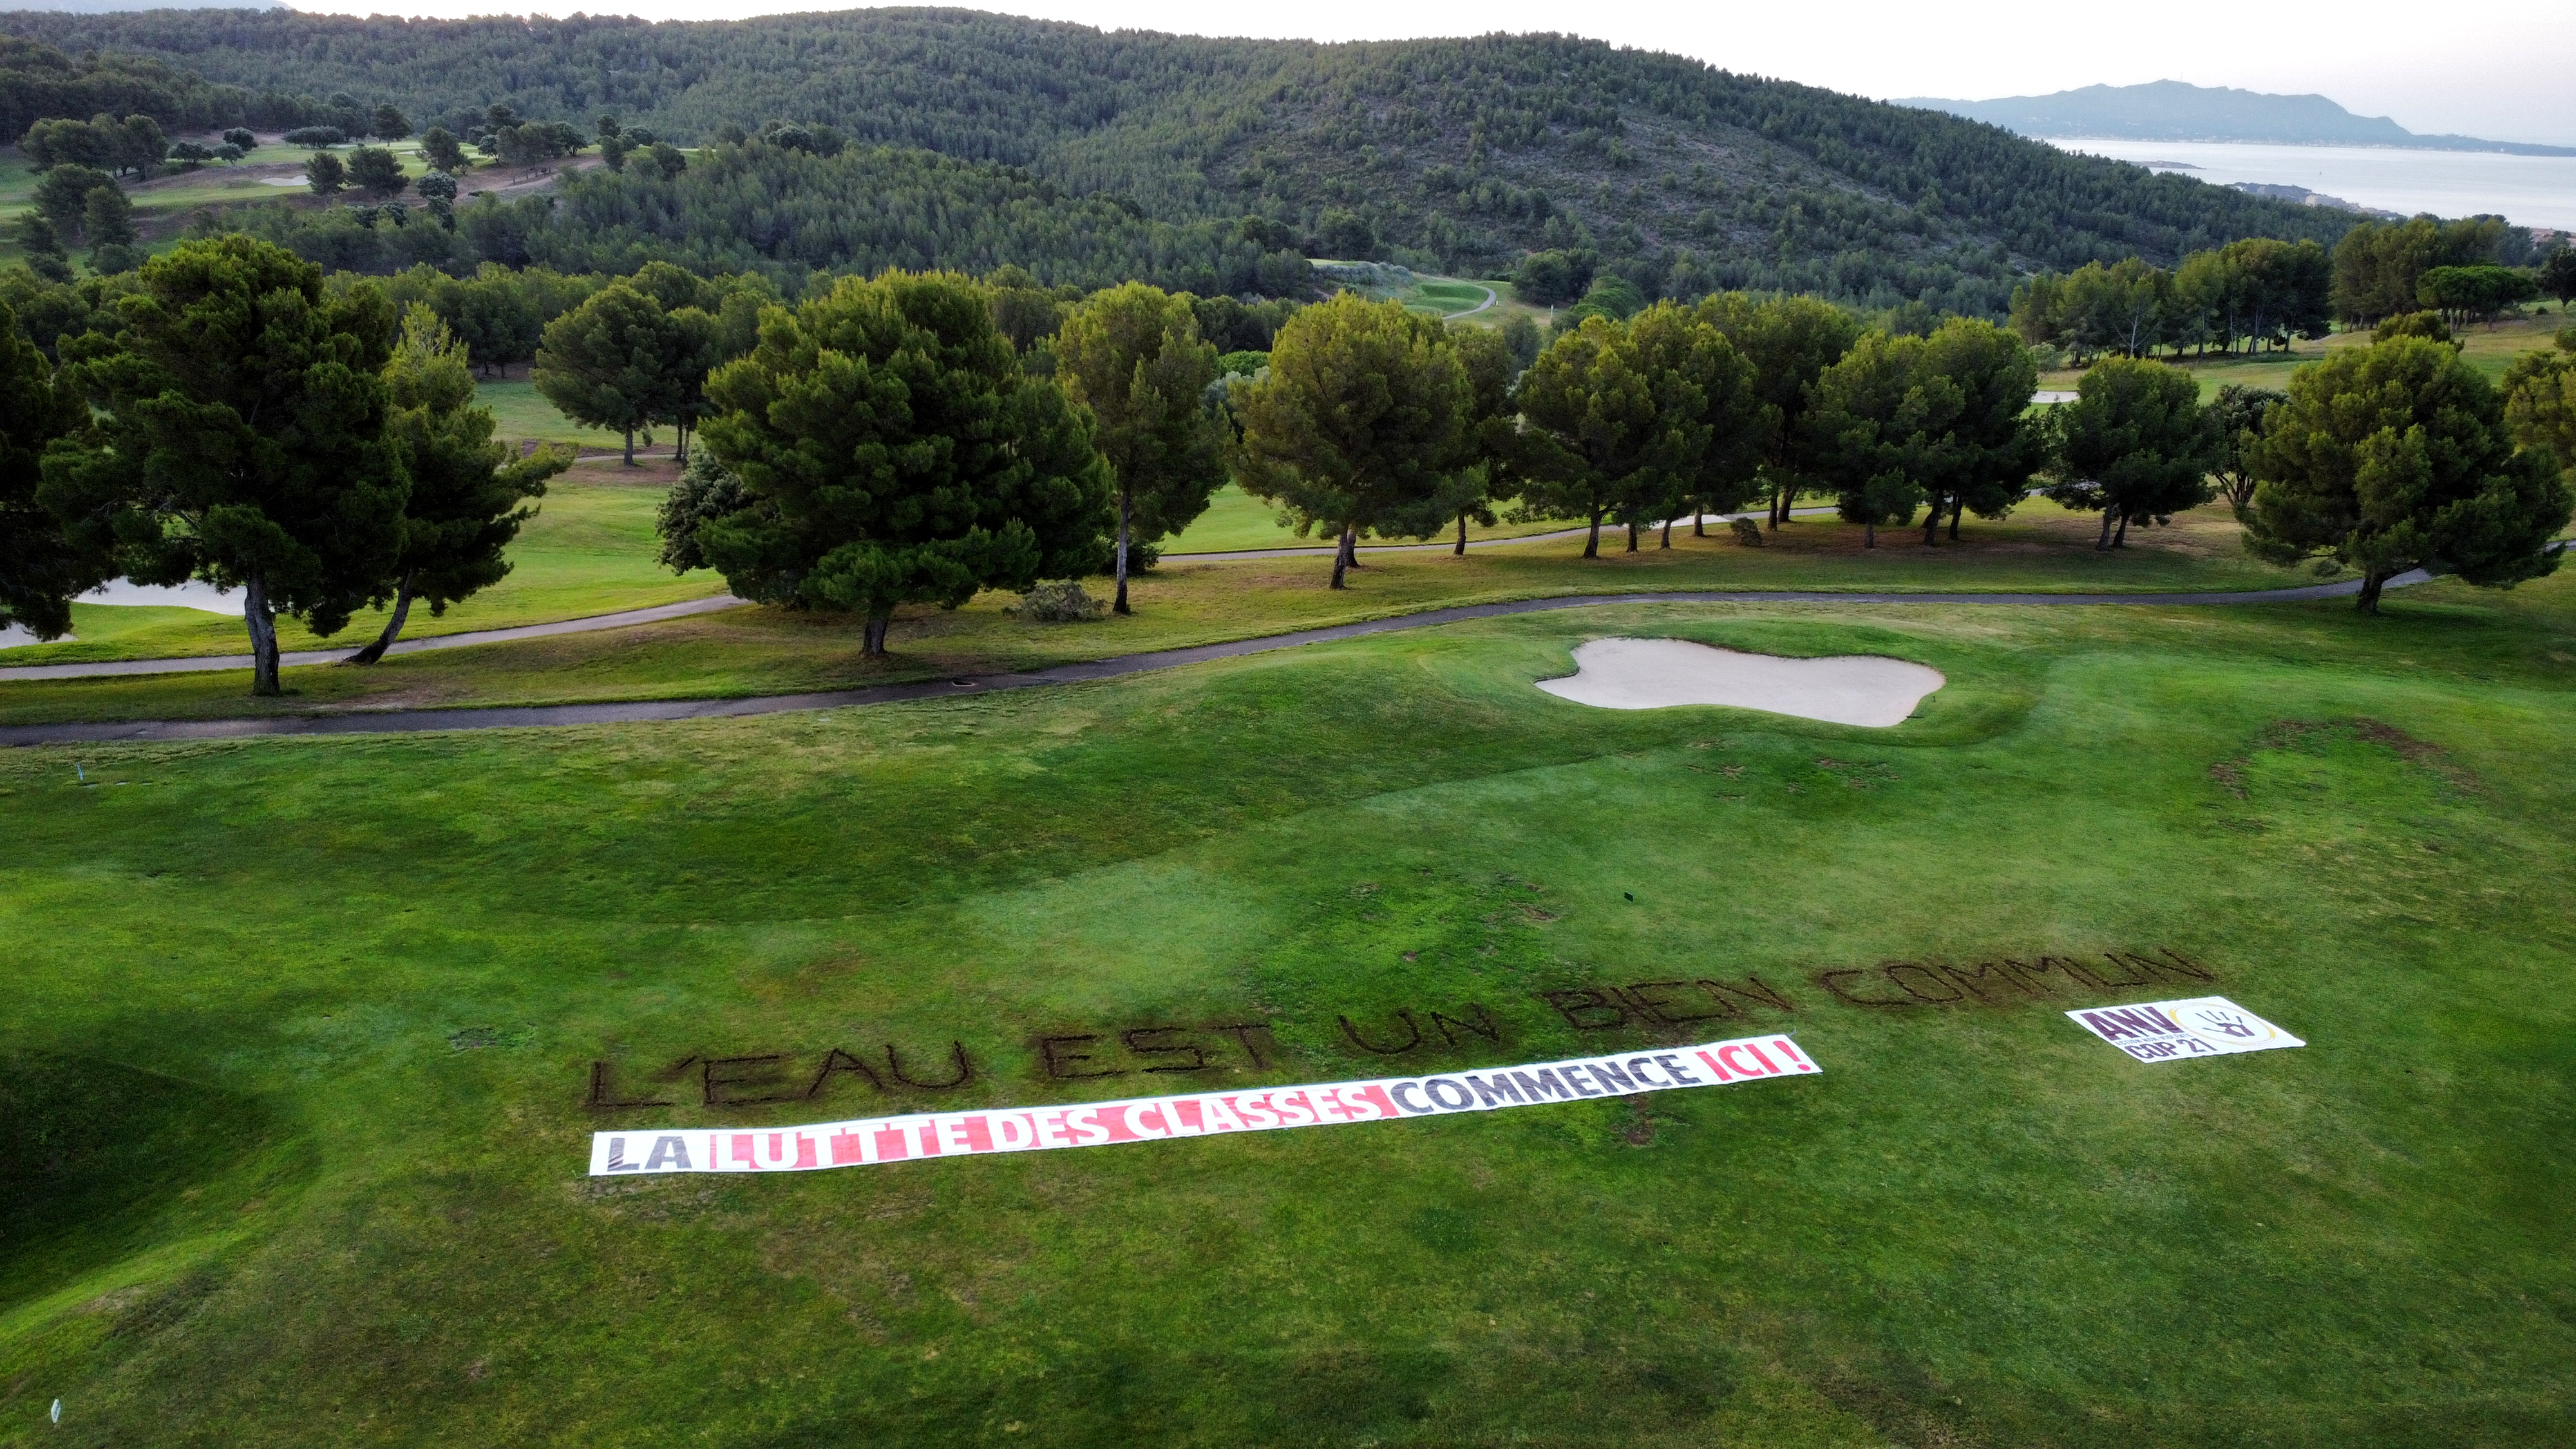 Golf vu de haut avec un message creusé dans la terre "L'eau est un bien commun" et une banderole "La lutte des classes commence ici"